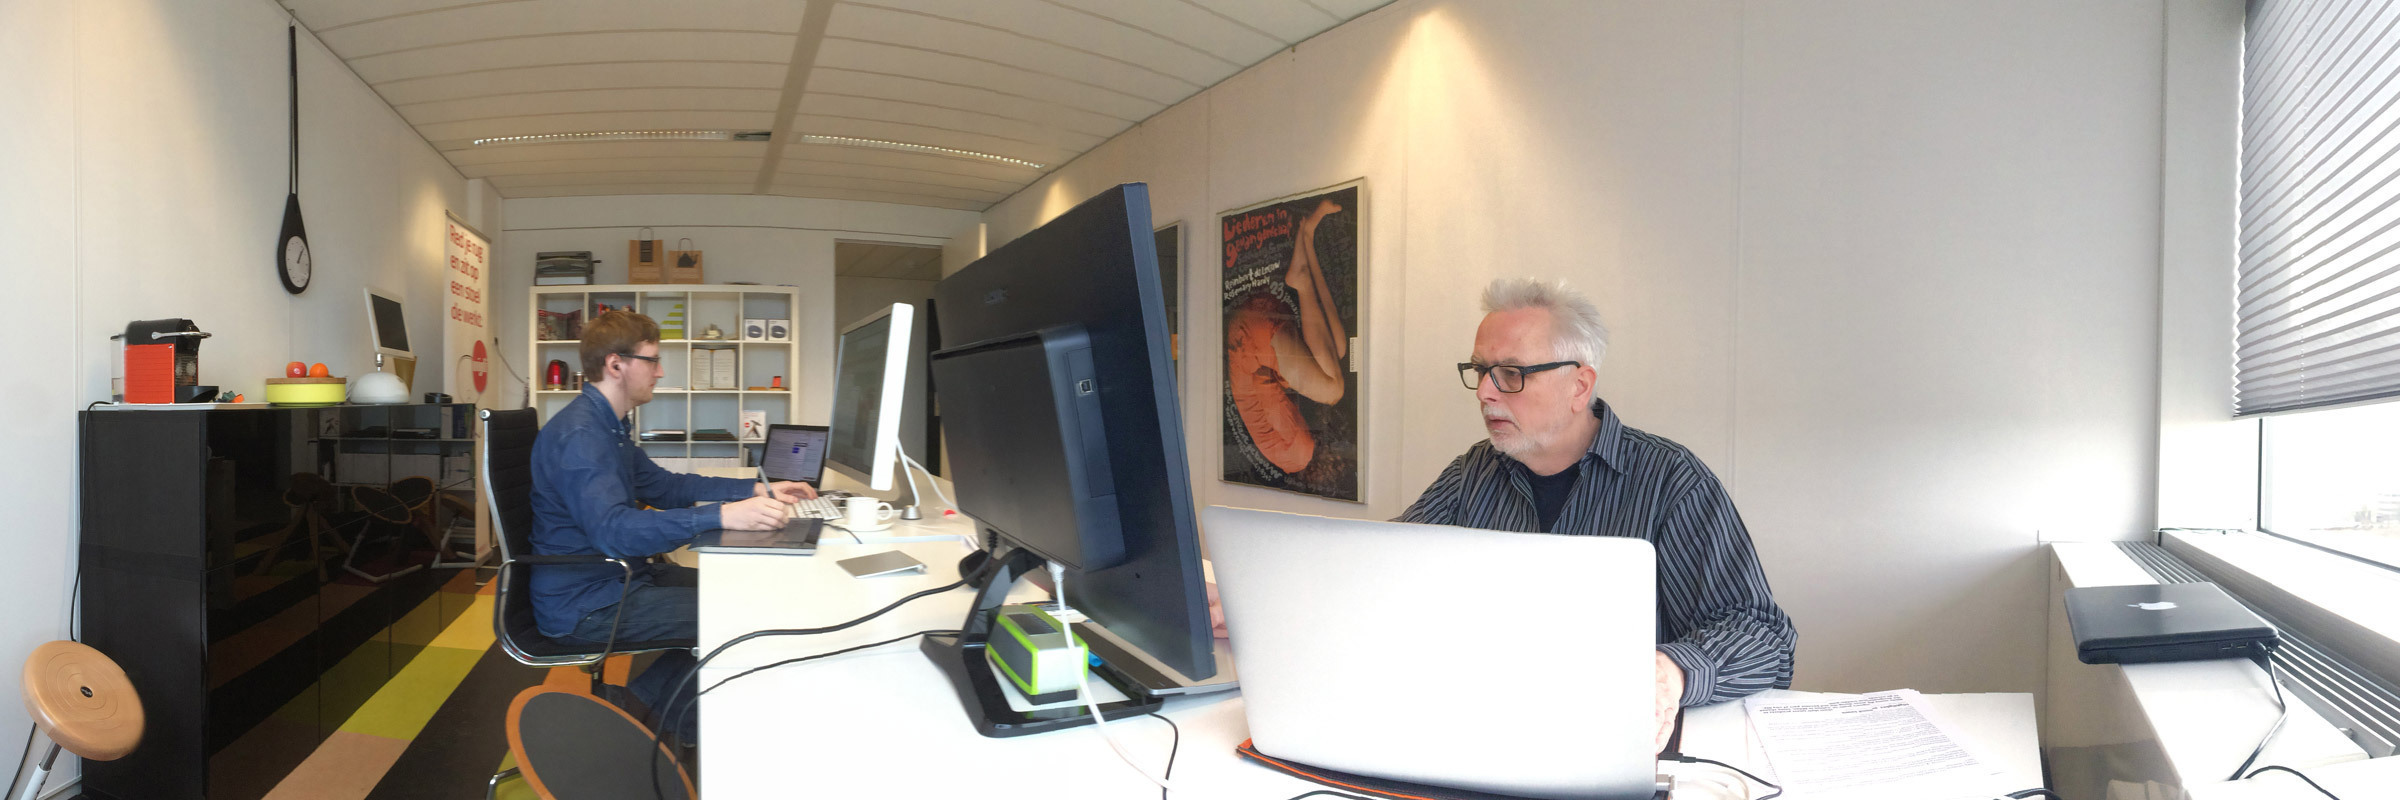 Aad van Dommelen (right) at work in Studio Witvorm.